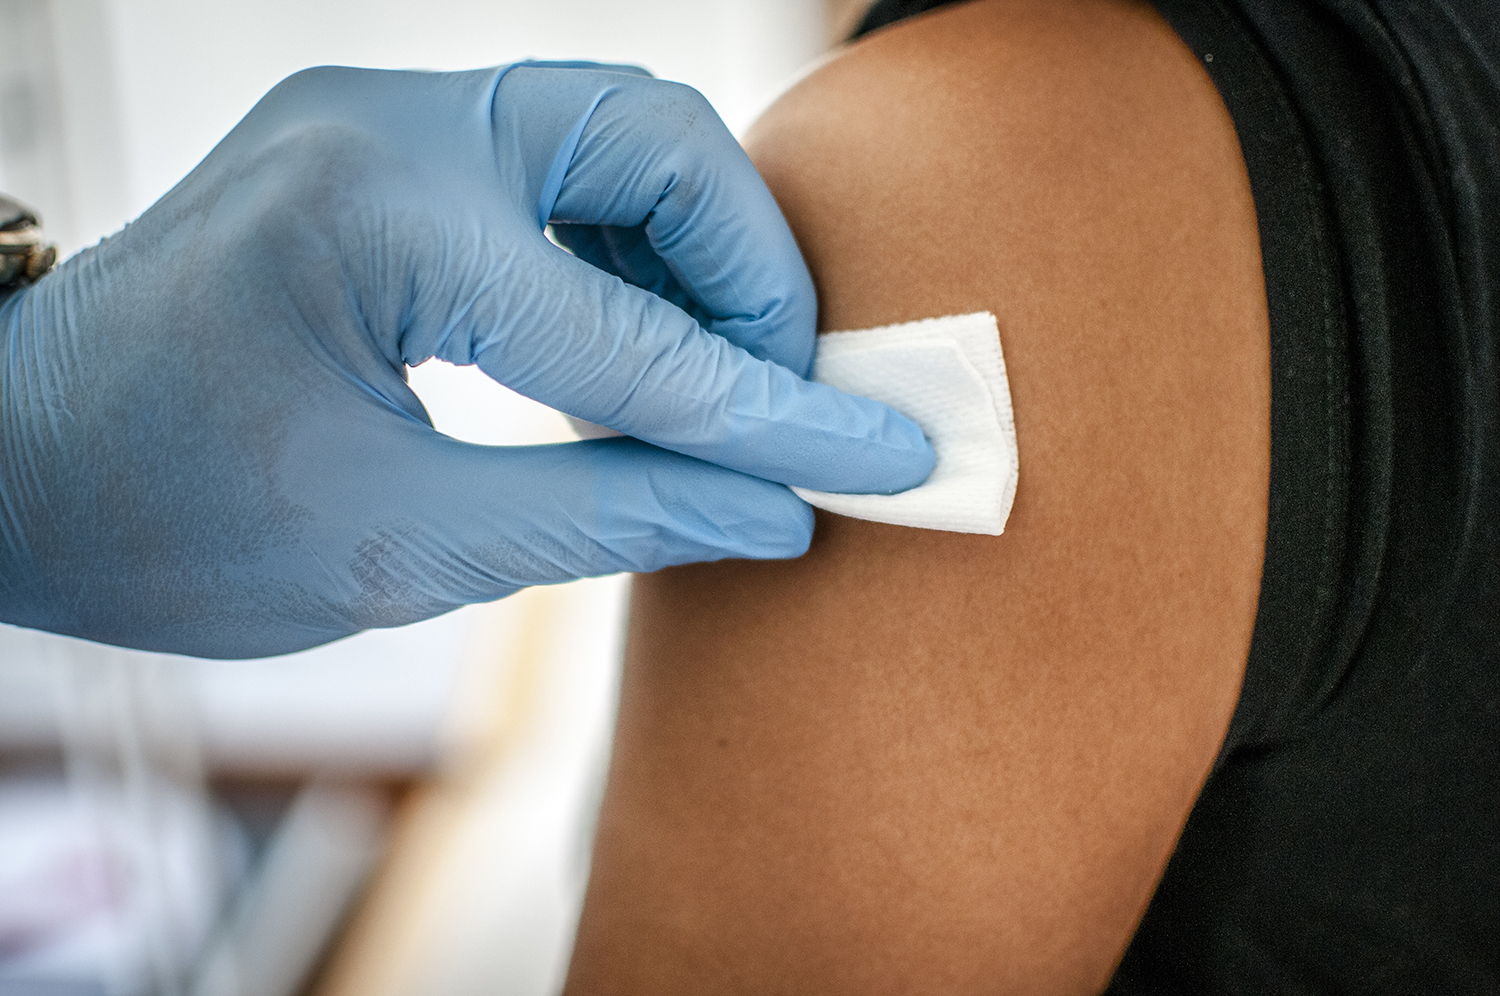 Vaccino hpv uomo controindicazioni - Vaccinazione papilloma virus rischi - Steroid cream for hpv